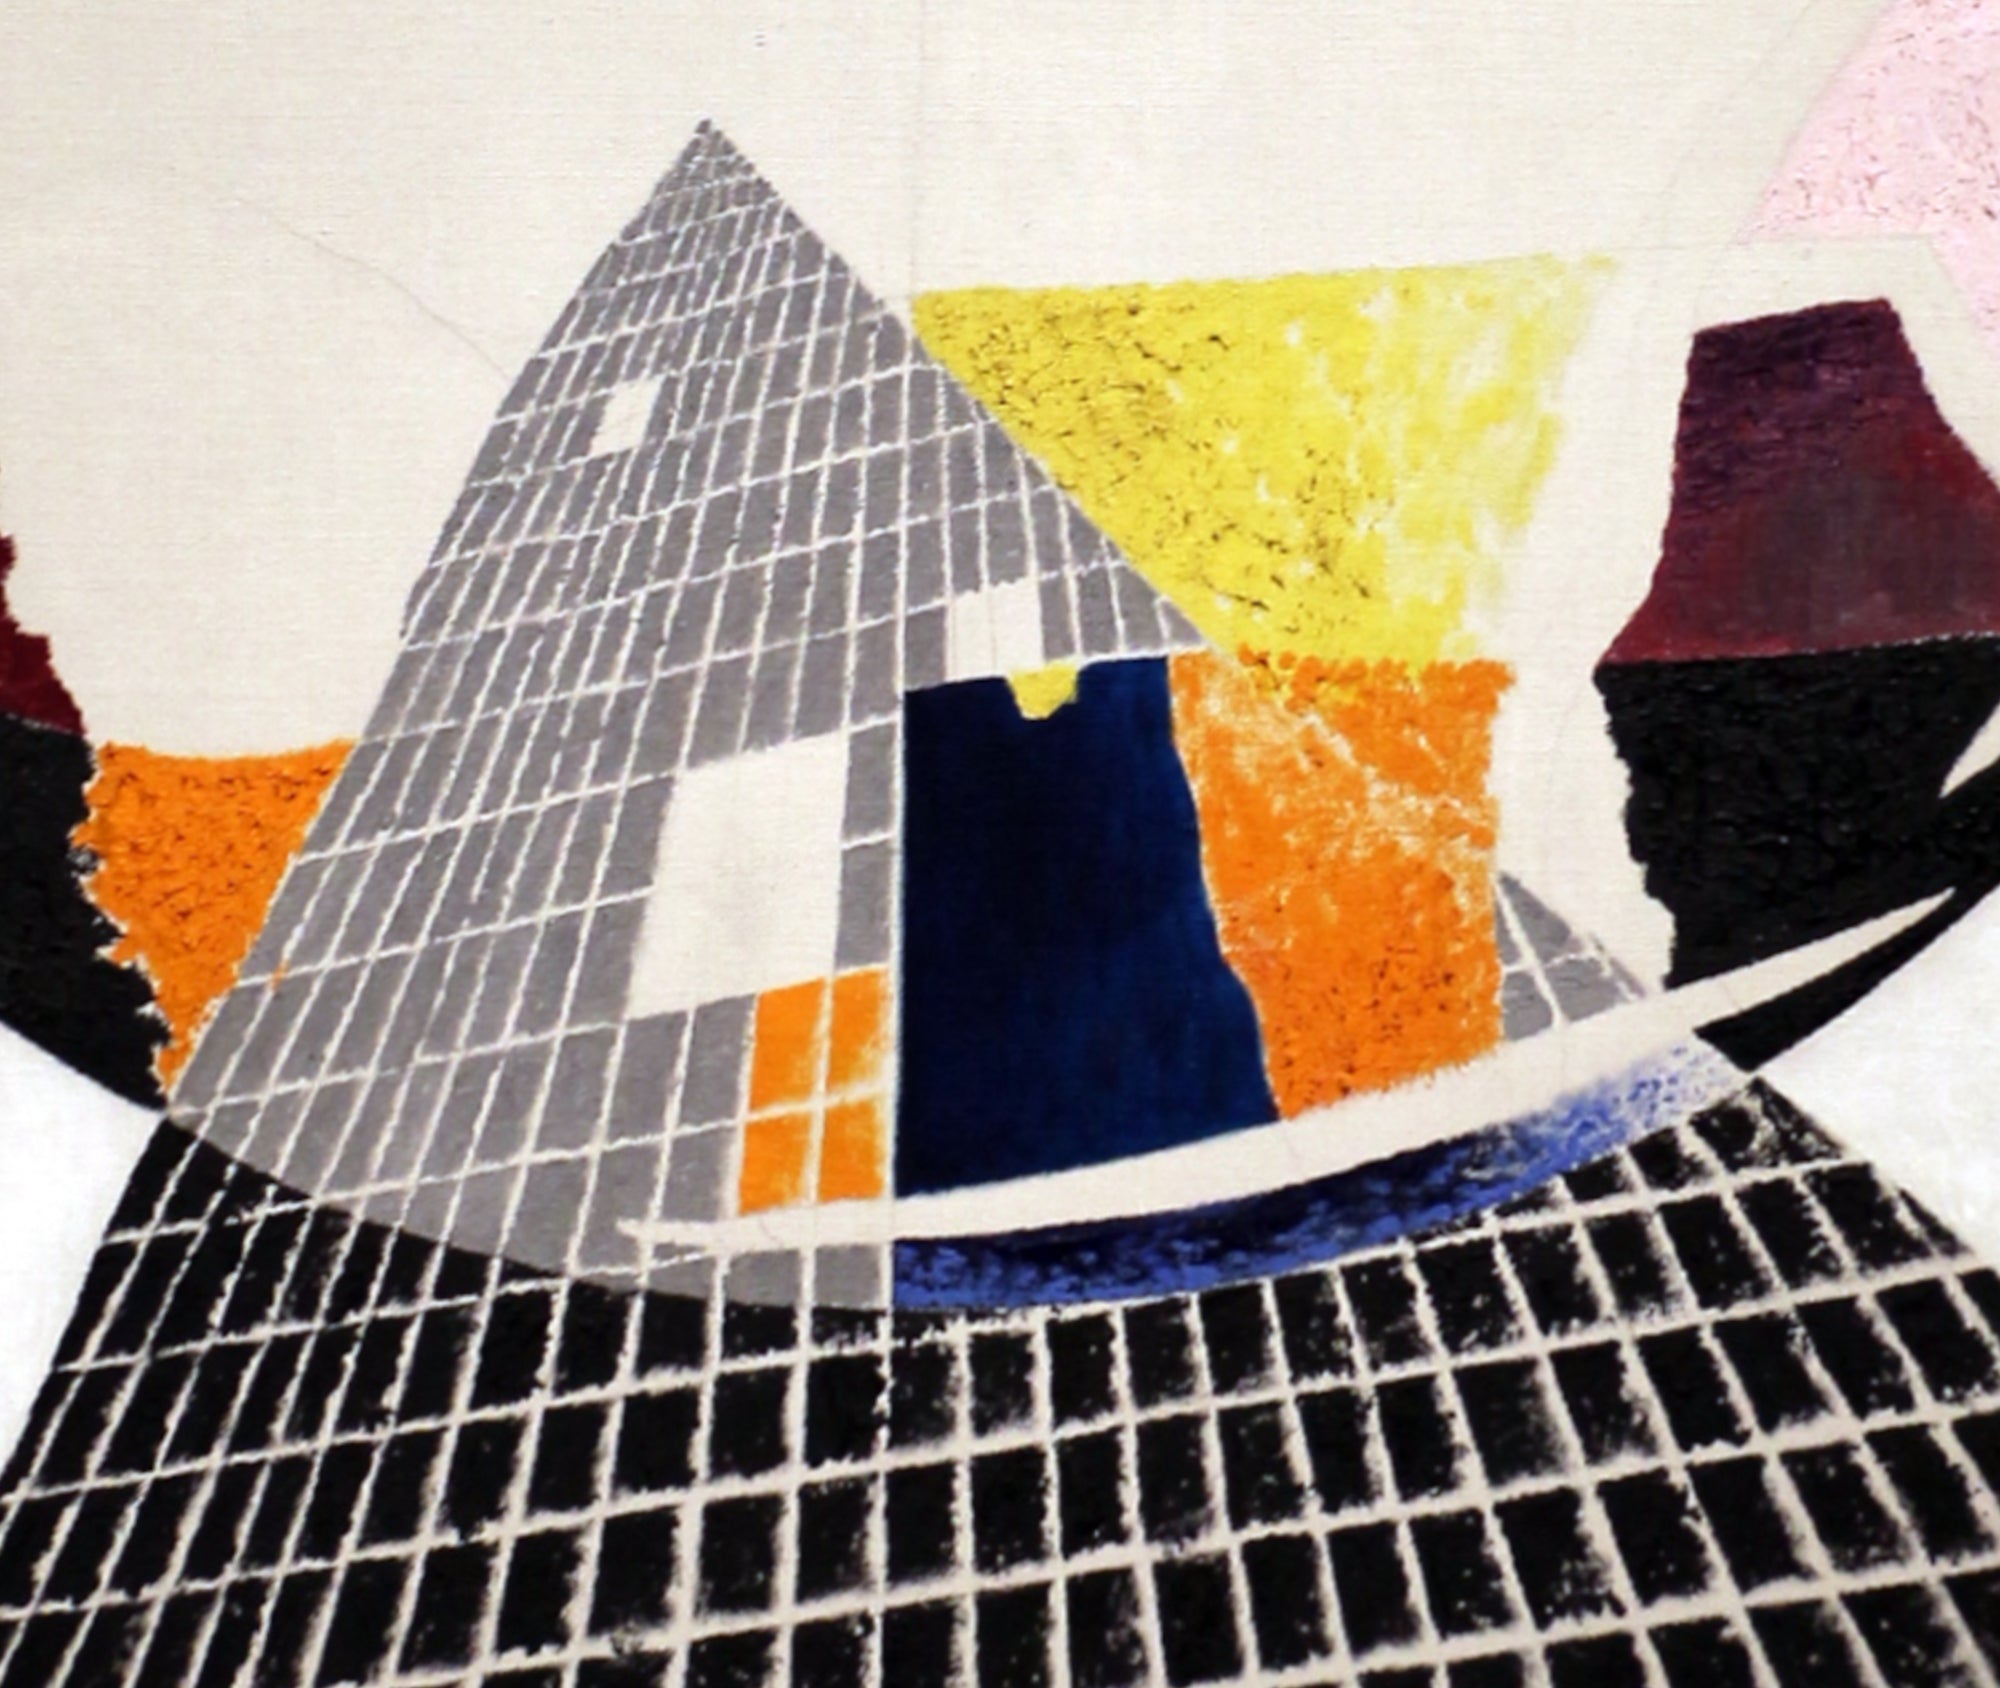 László Moholy-Nagy Abstract Fine Art Print, Nuclear I